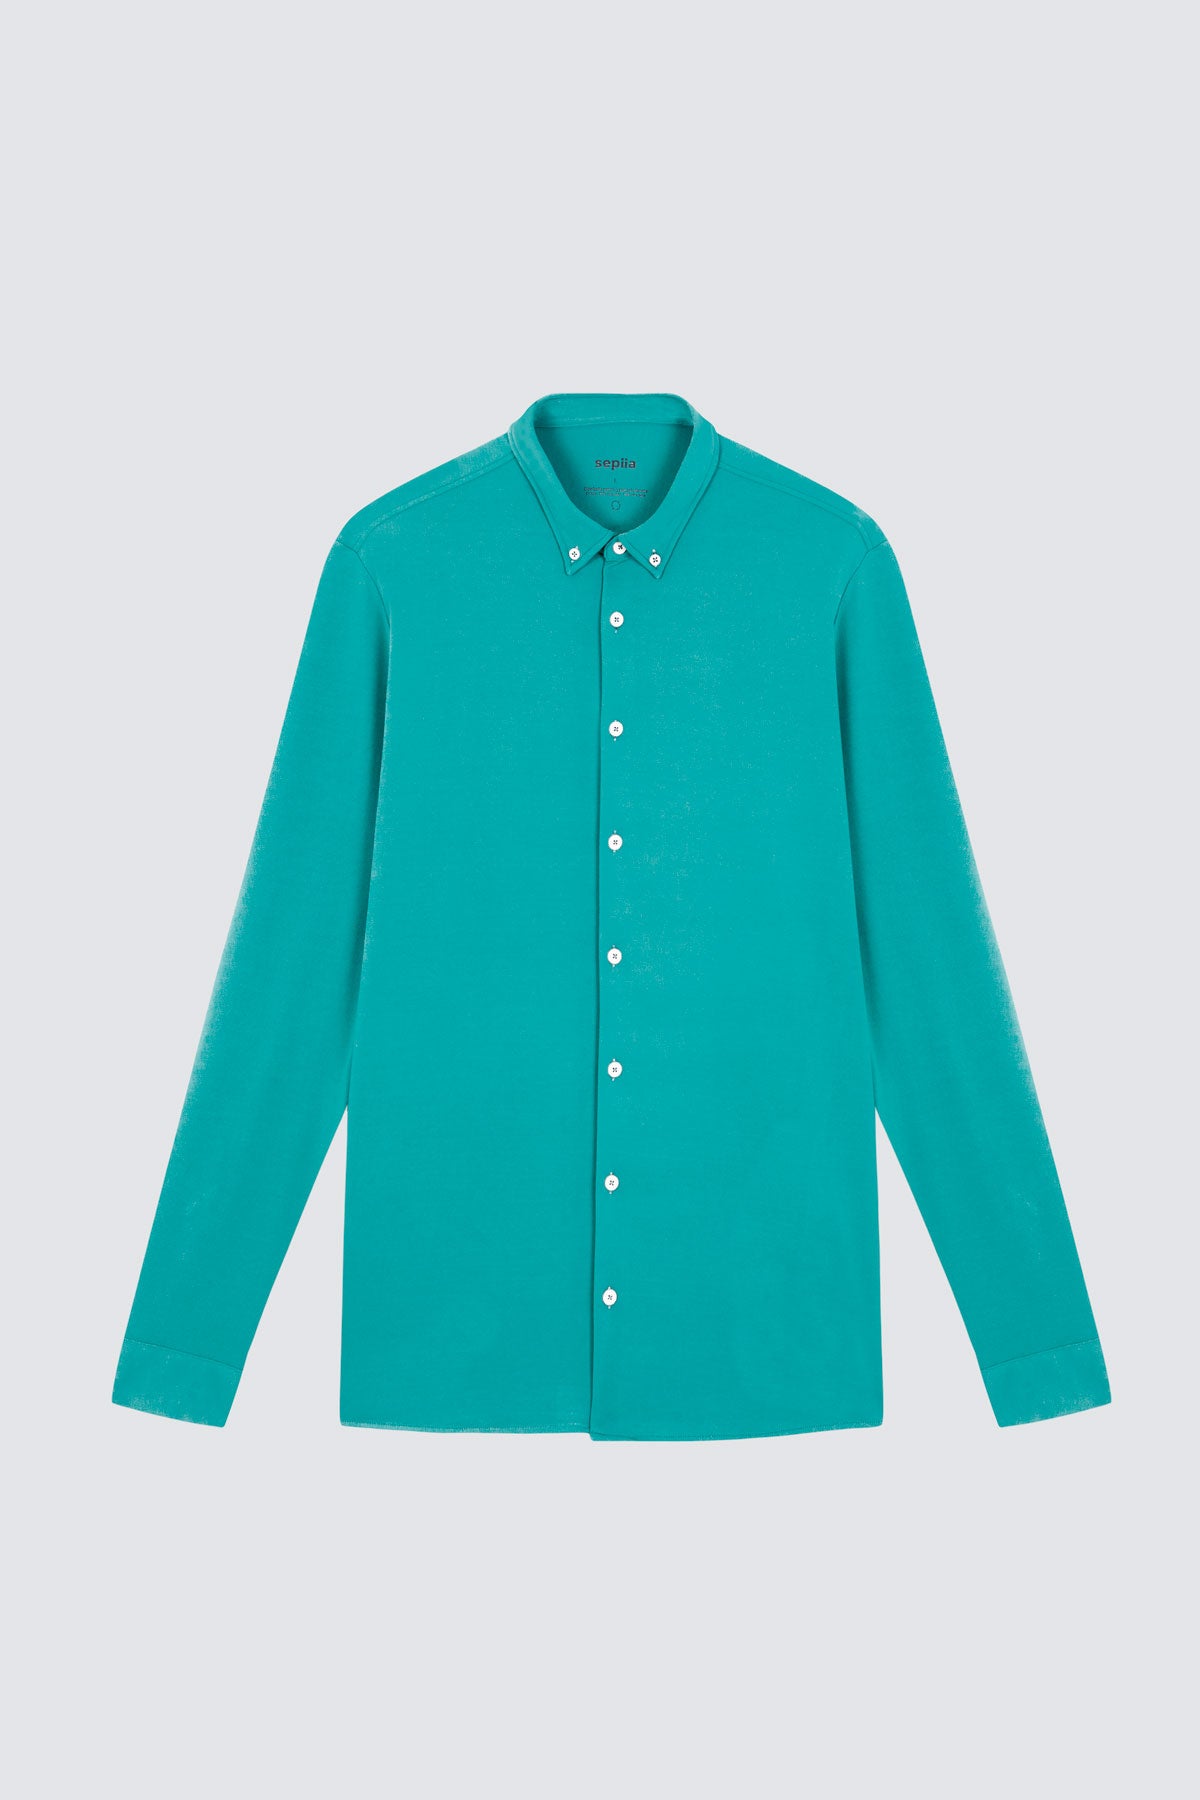 Camisa casual de hombre verde clorofila regular de Sepiia, estilo y versatilidad en una prenda duradera. Foto prenda en plano